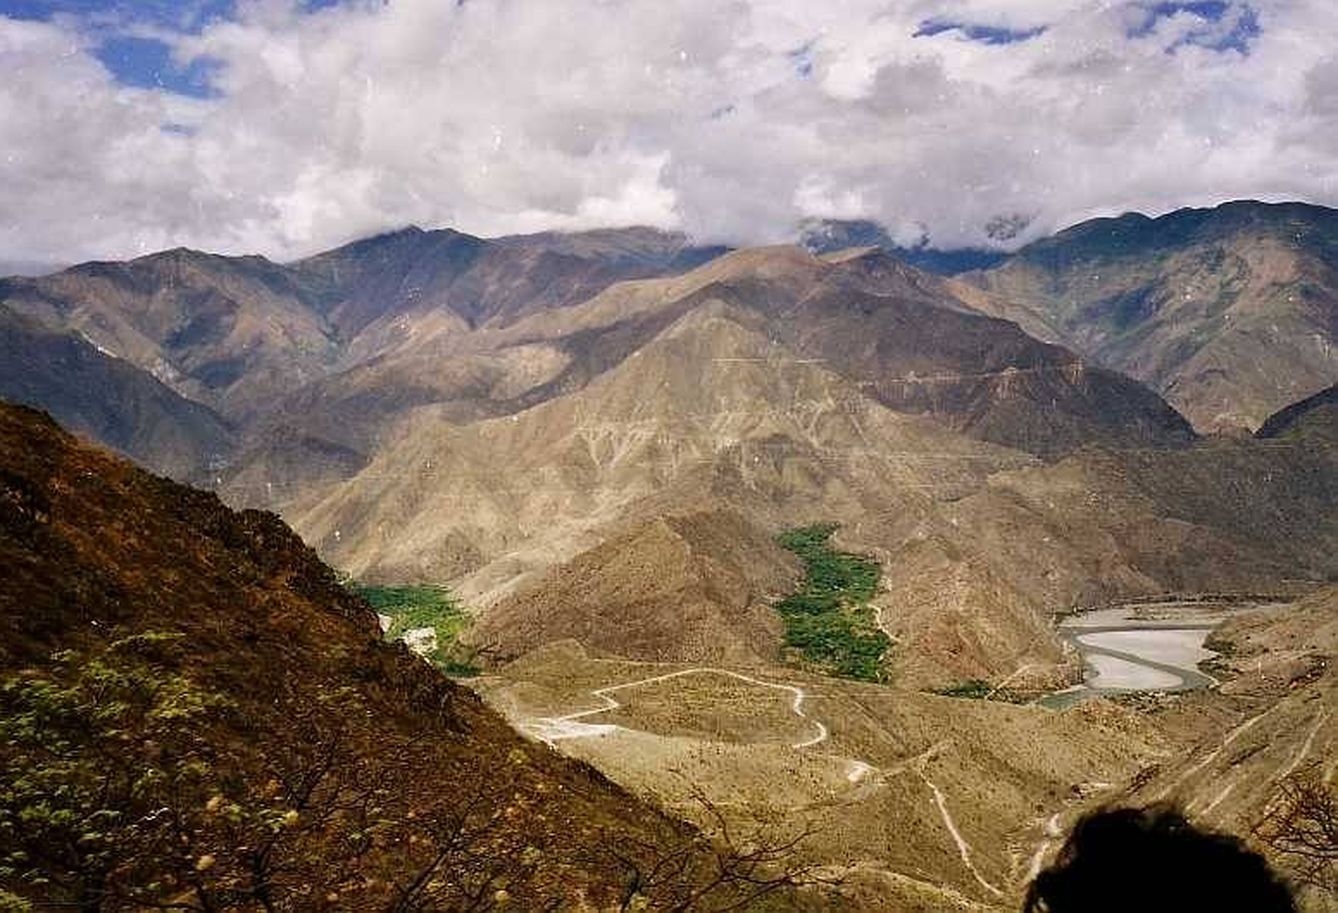 Valle del río Marañón, donde se estableció Graña. (Wikipedia)